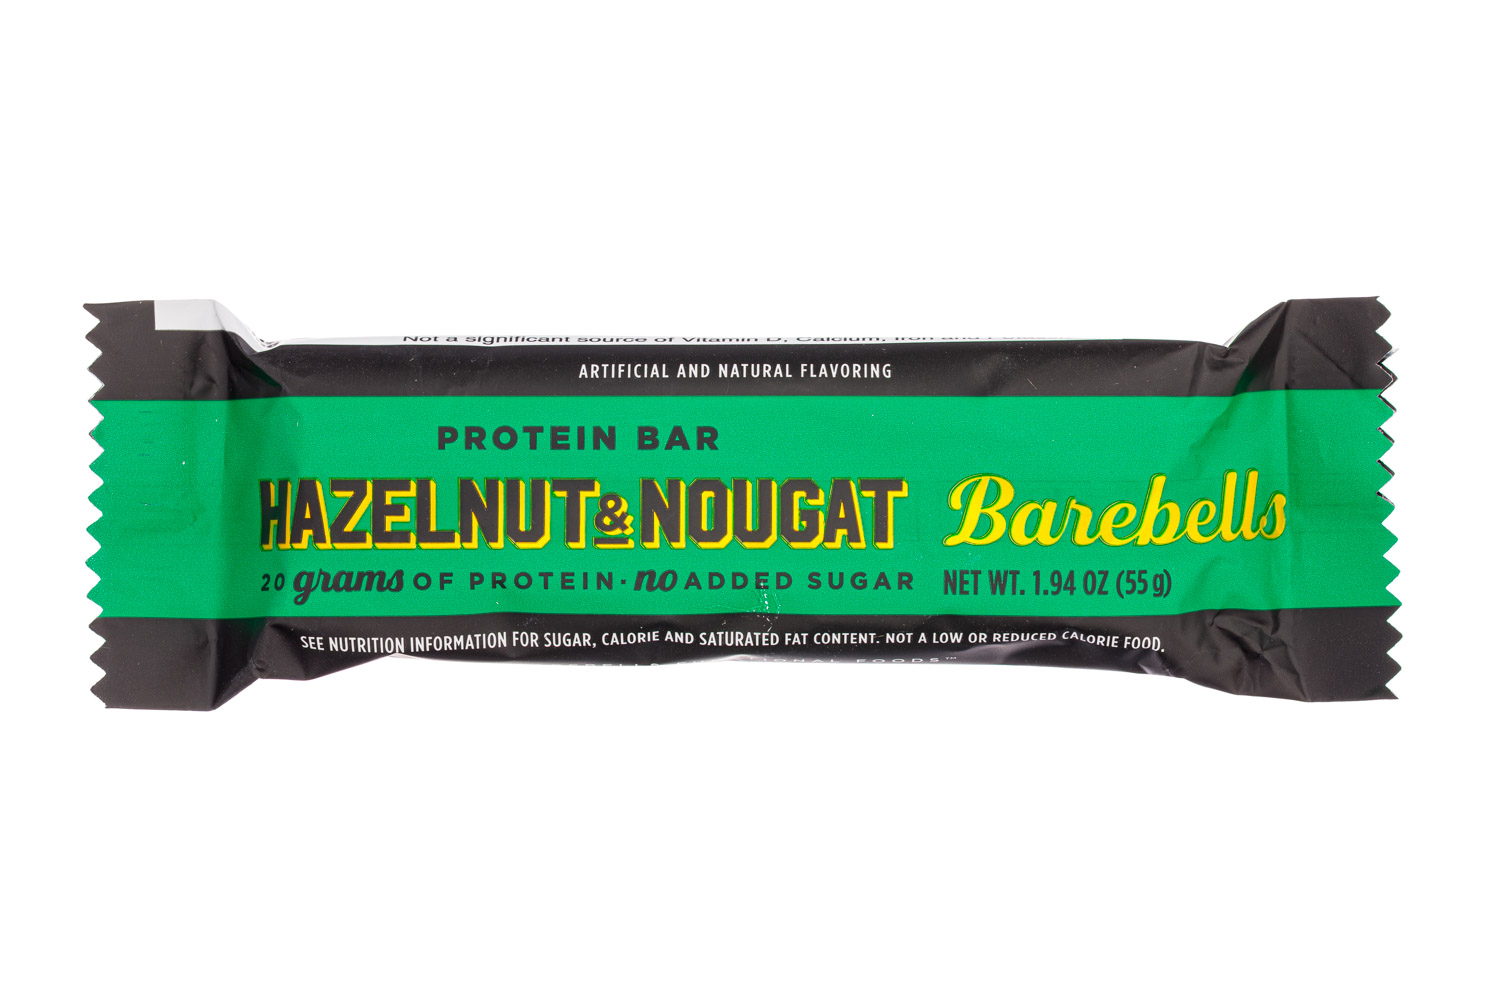 Hazelnut and Nougat